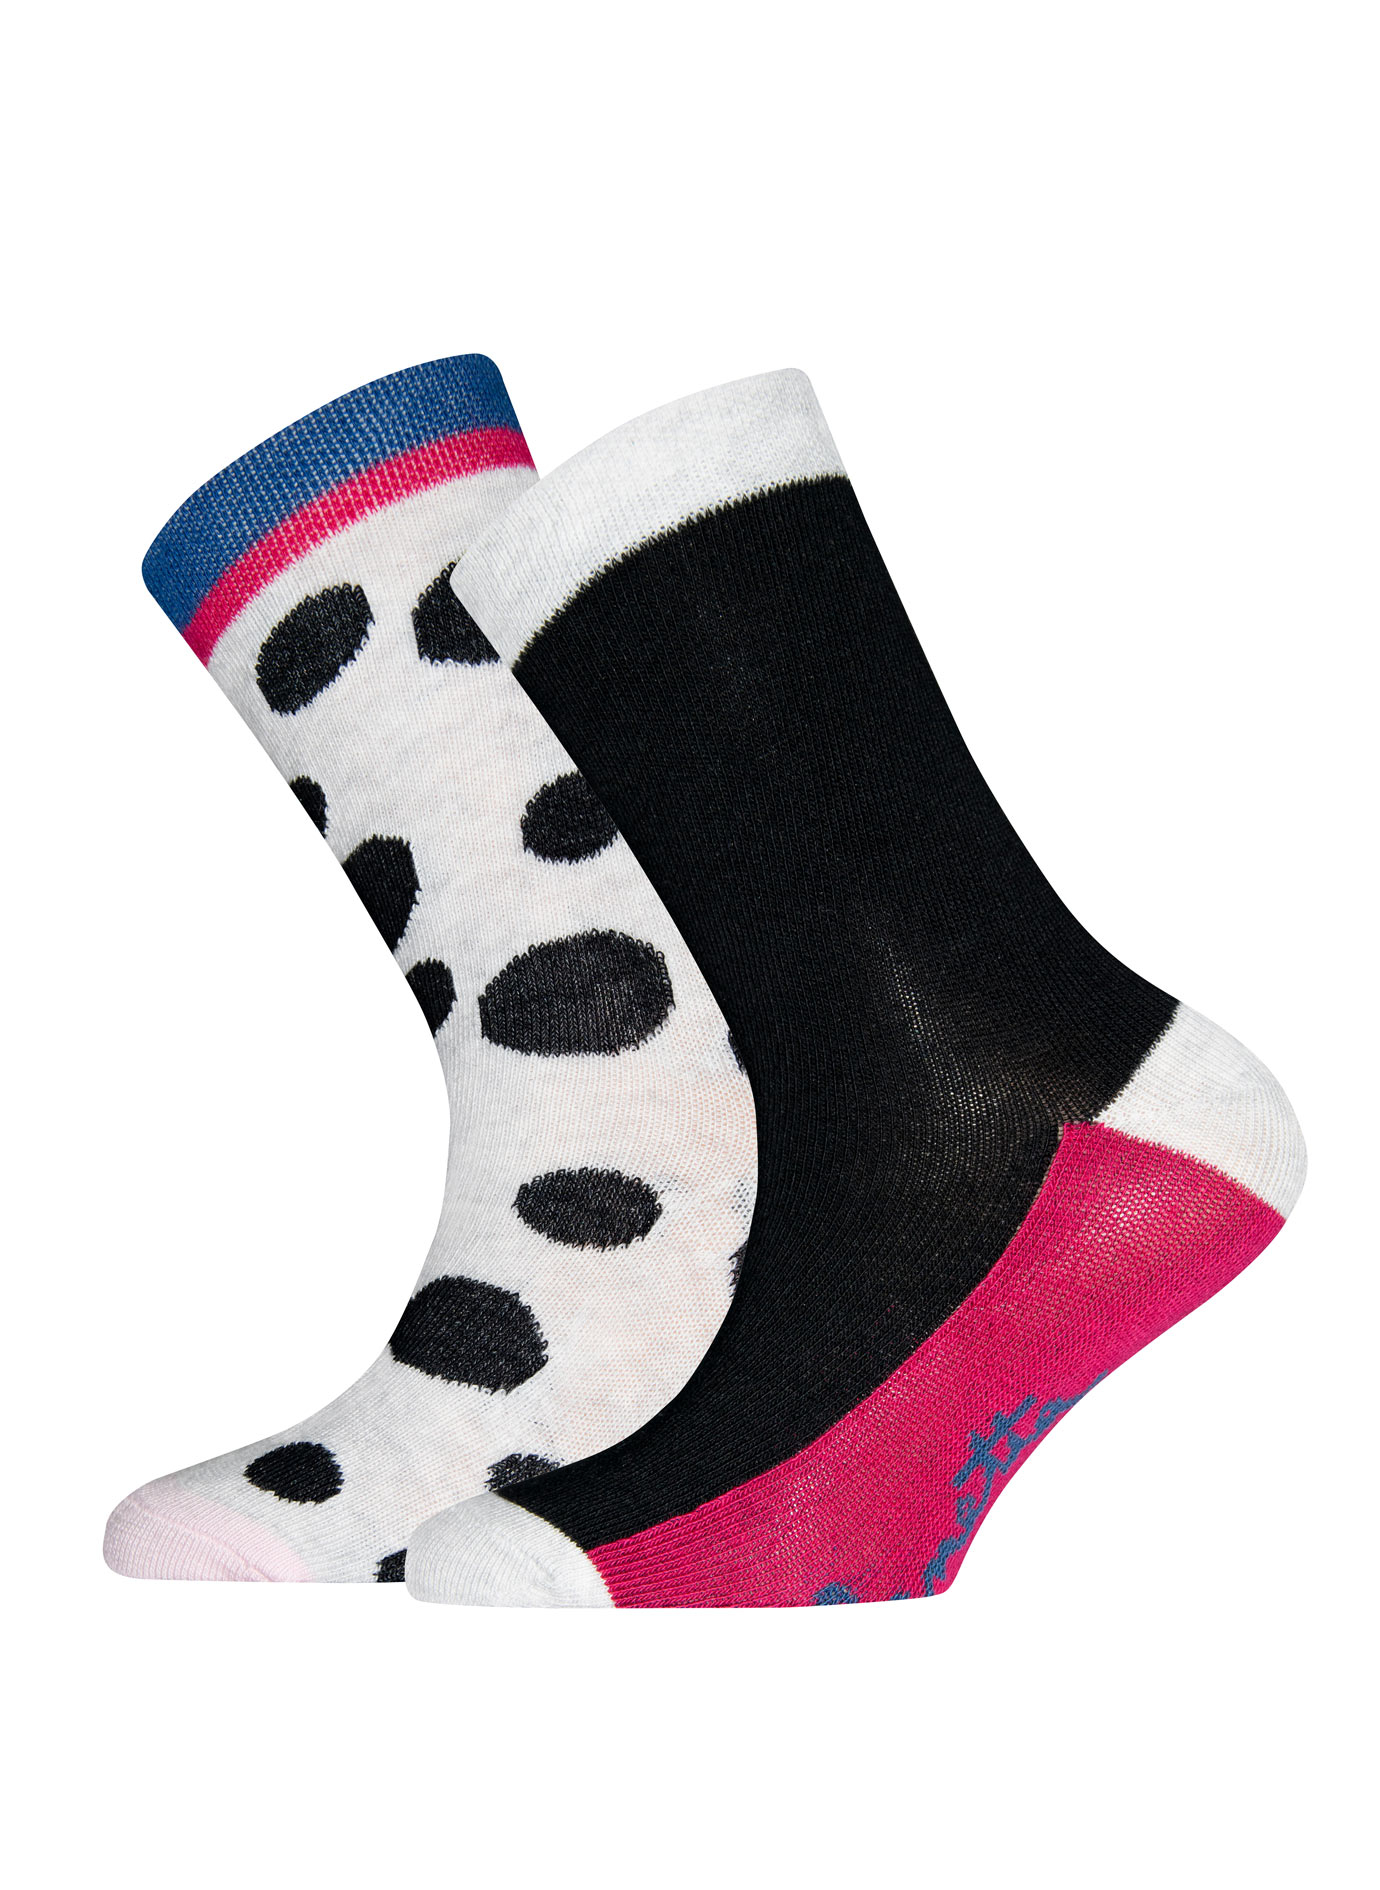 Mädchen-Socken (Doppelpack) Schwarz und Punkte